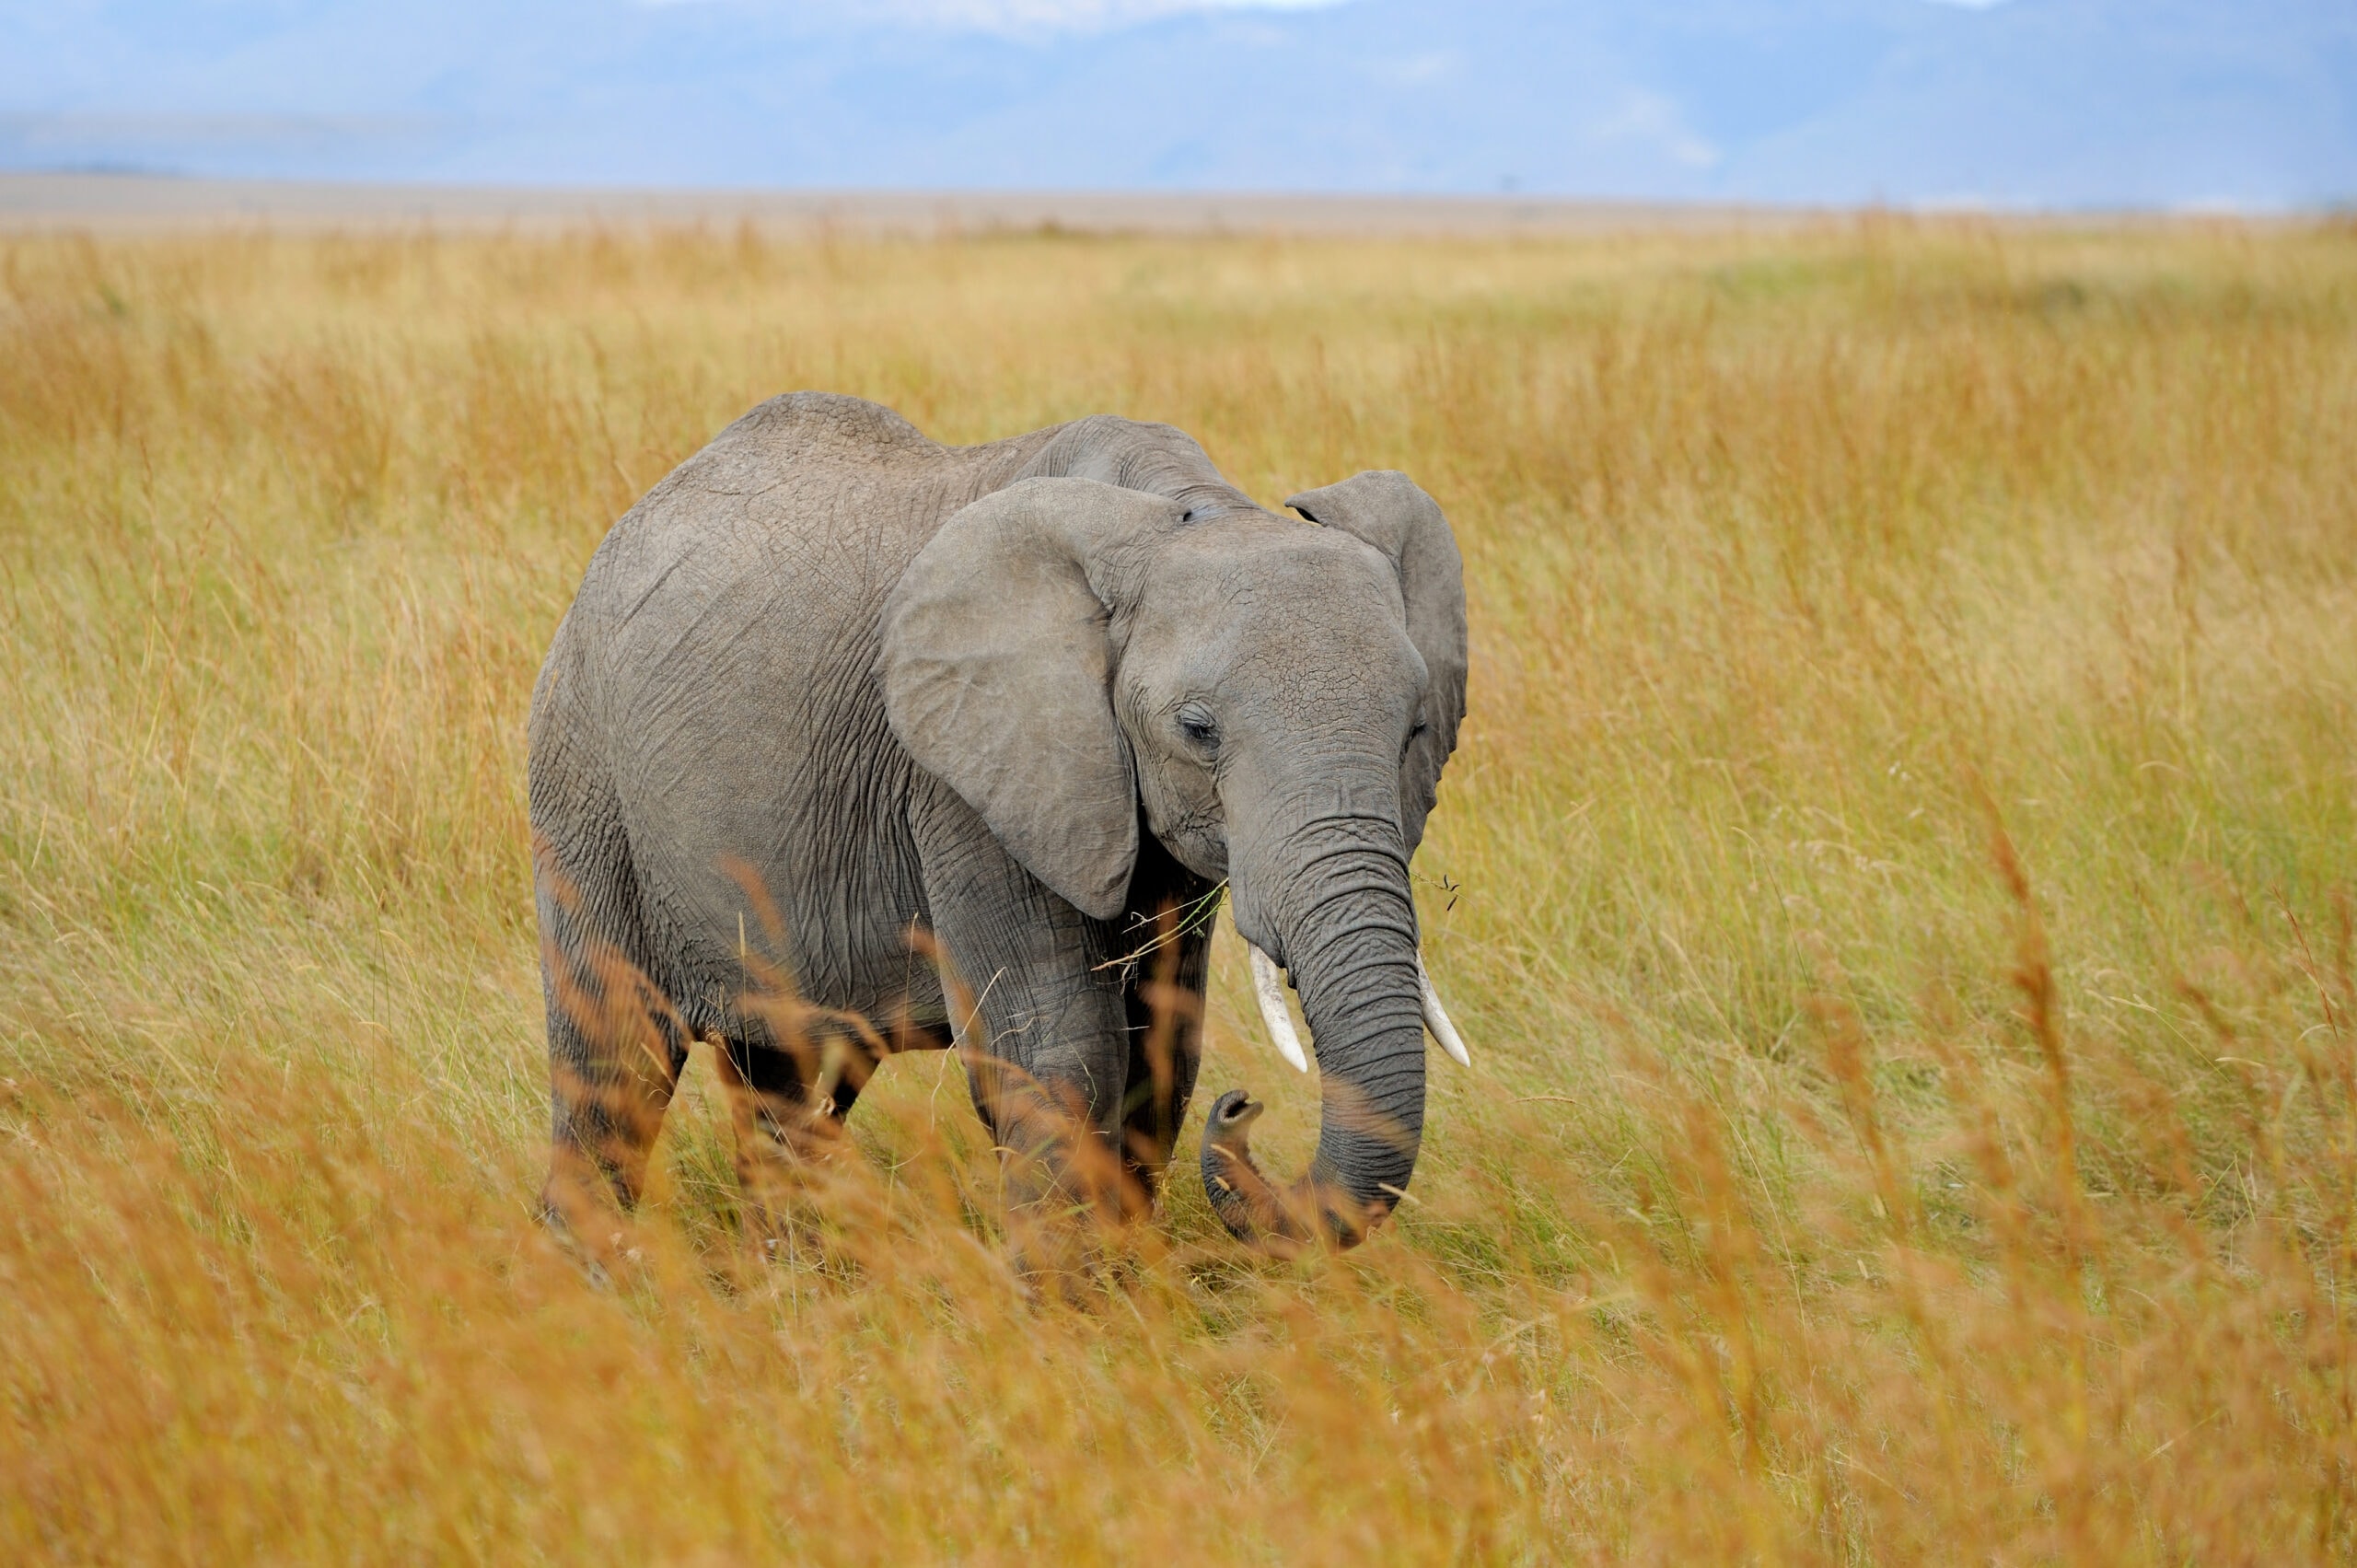 elephant in national park of kenya 2021 08 26 15 55 36 utc 2 scaled